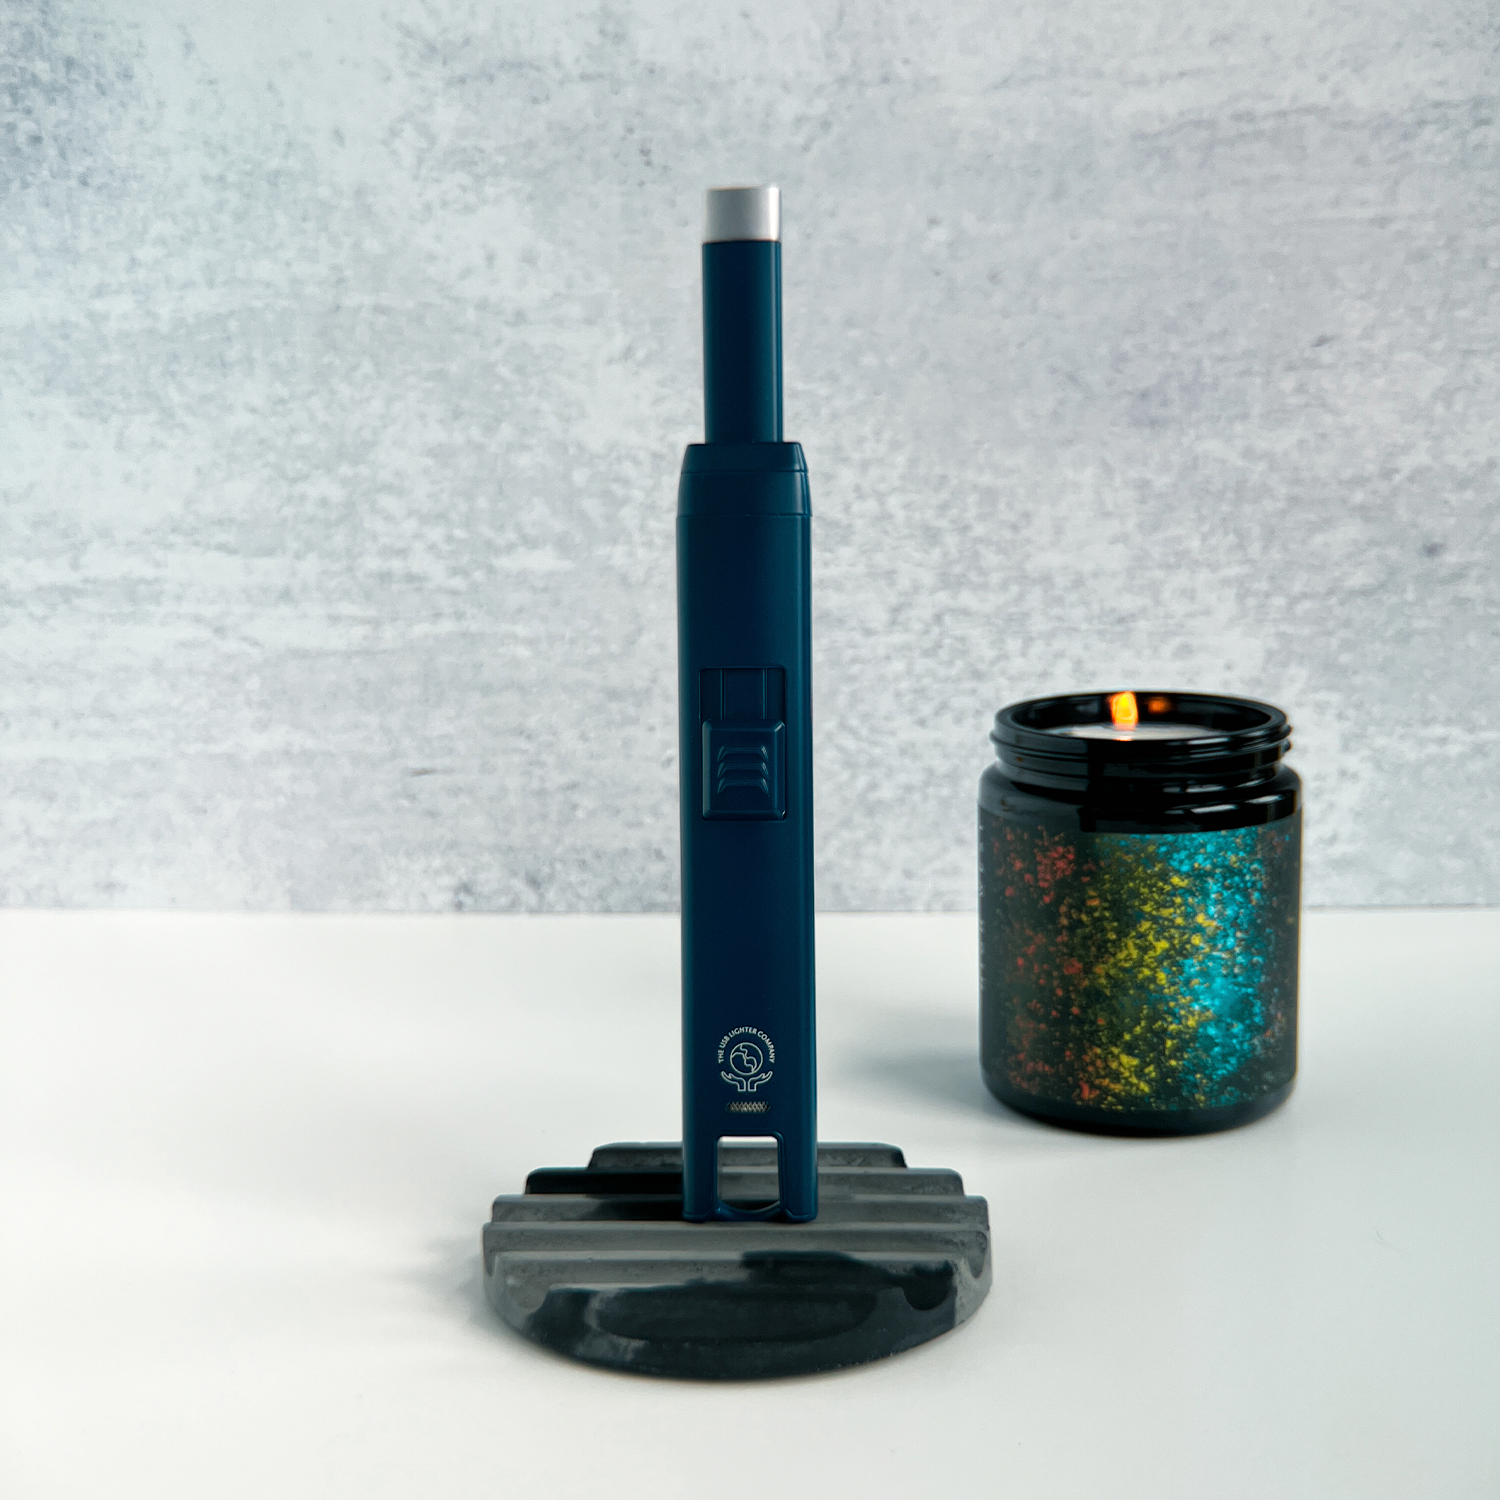 Allumeur de bougies électrique THE ARC Bleu mat rechargeable et écologique